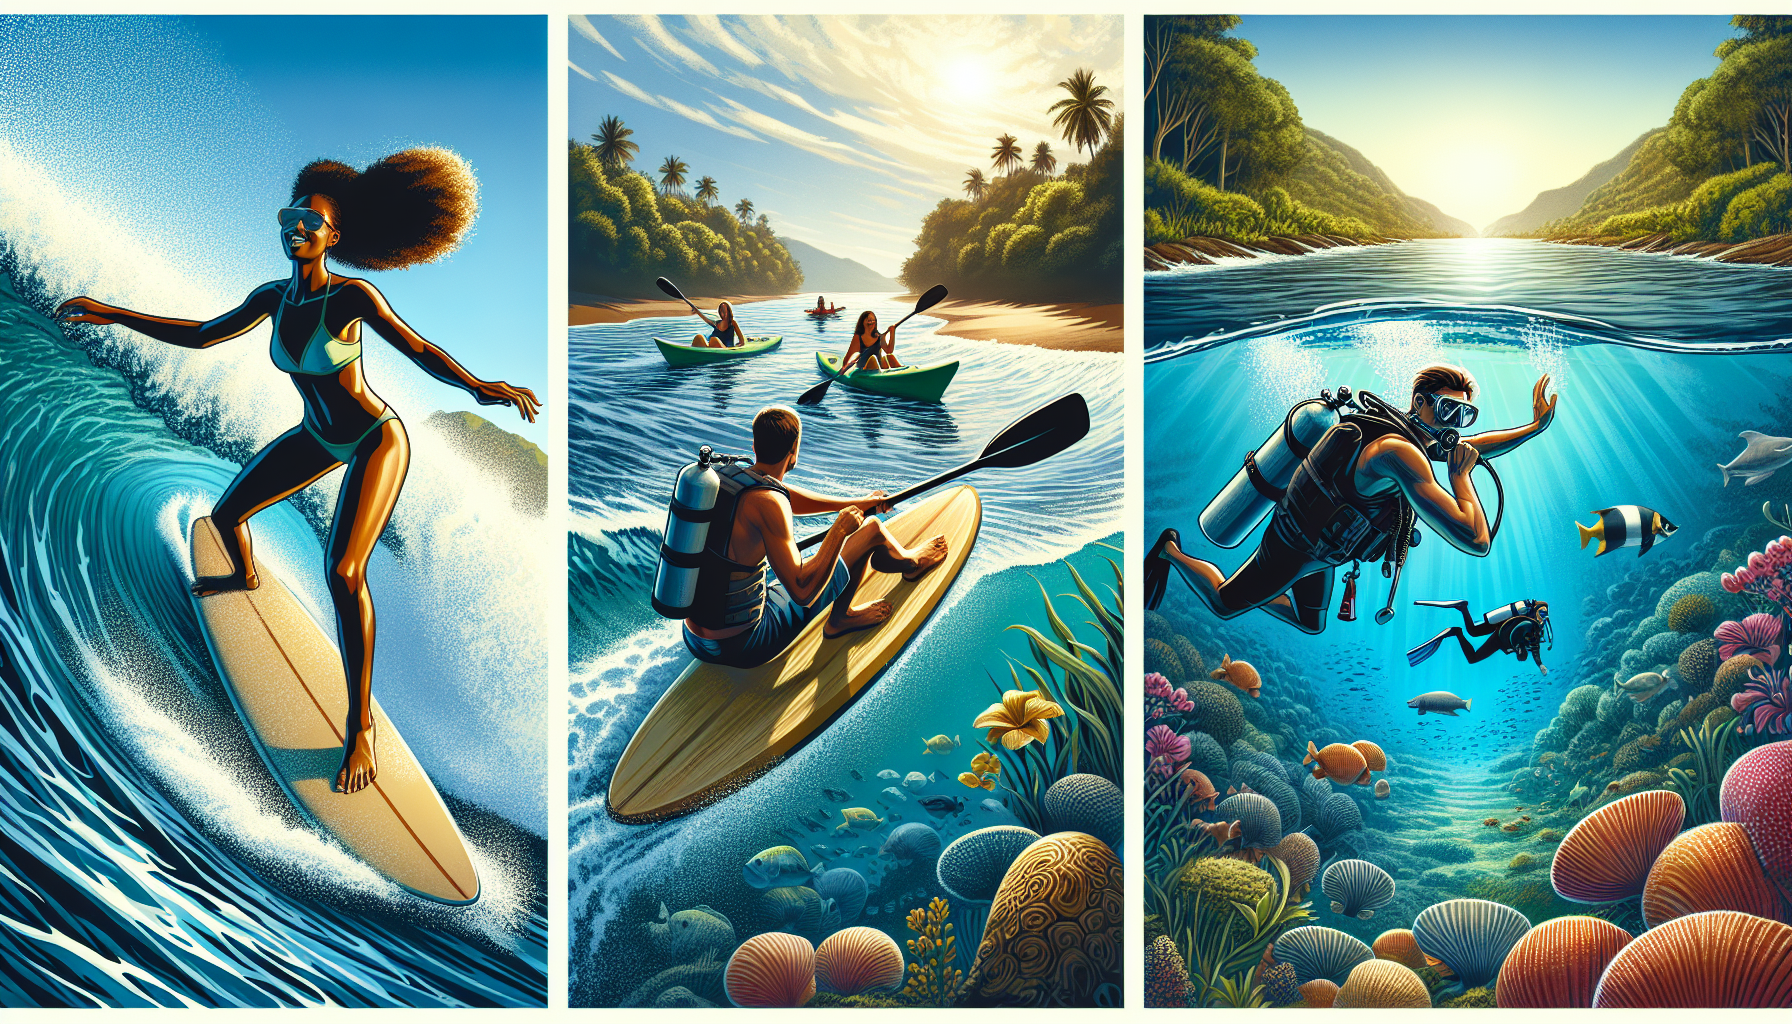 Tham gia các hoạt động thể thao nước như lướt sóng, đi kayak, lặn biển